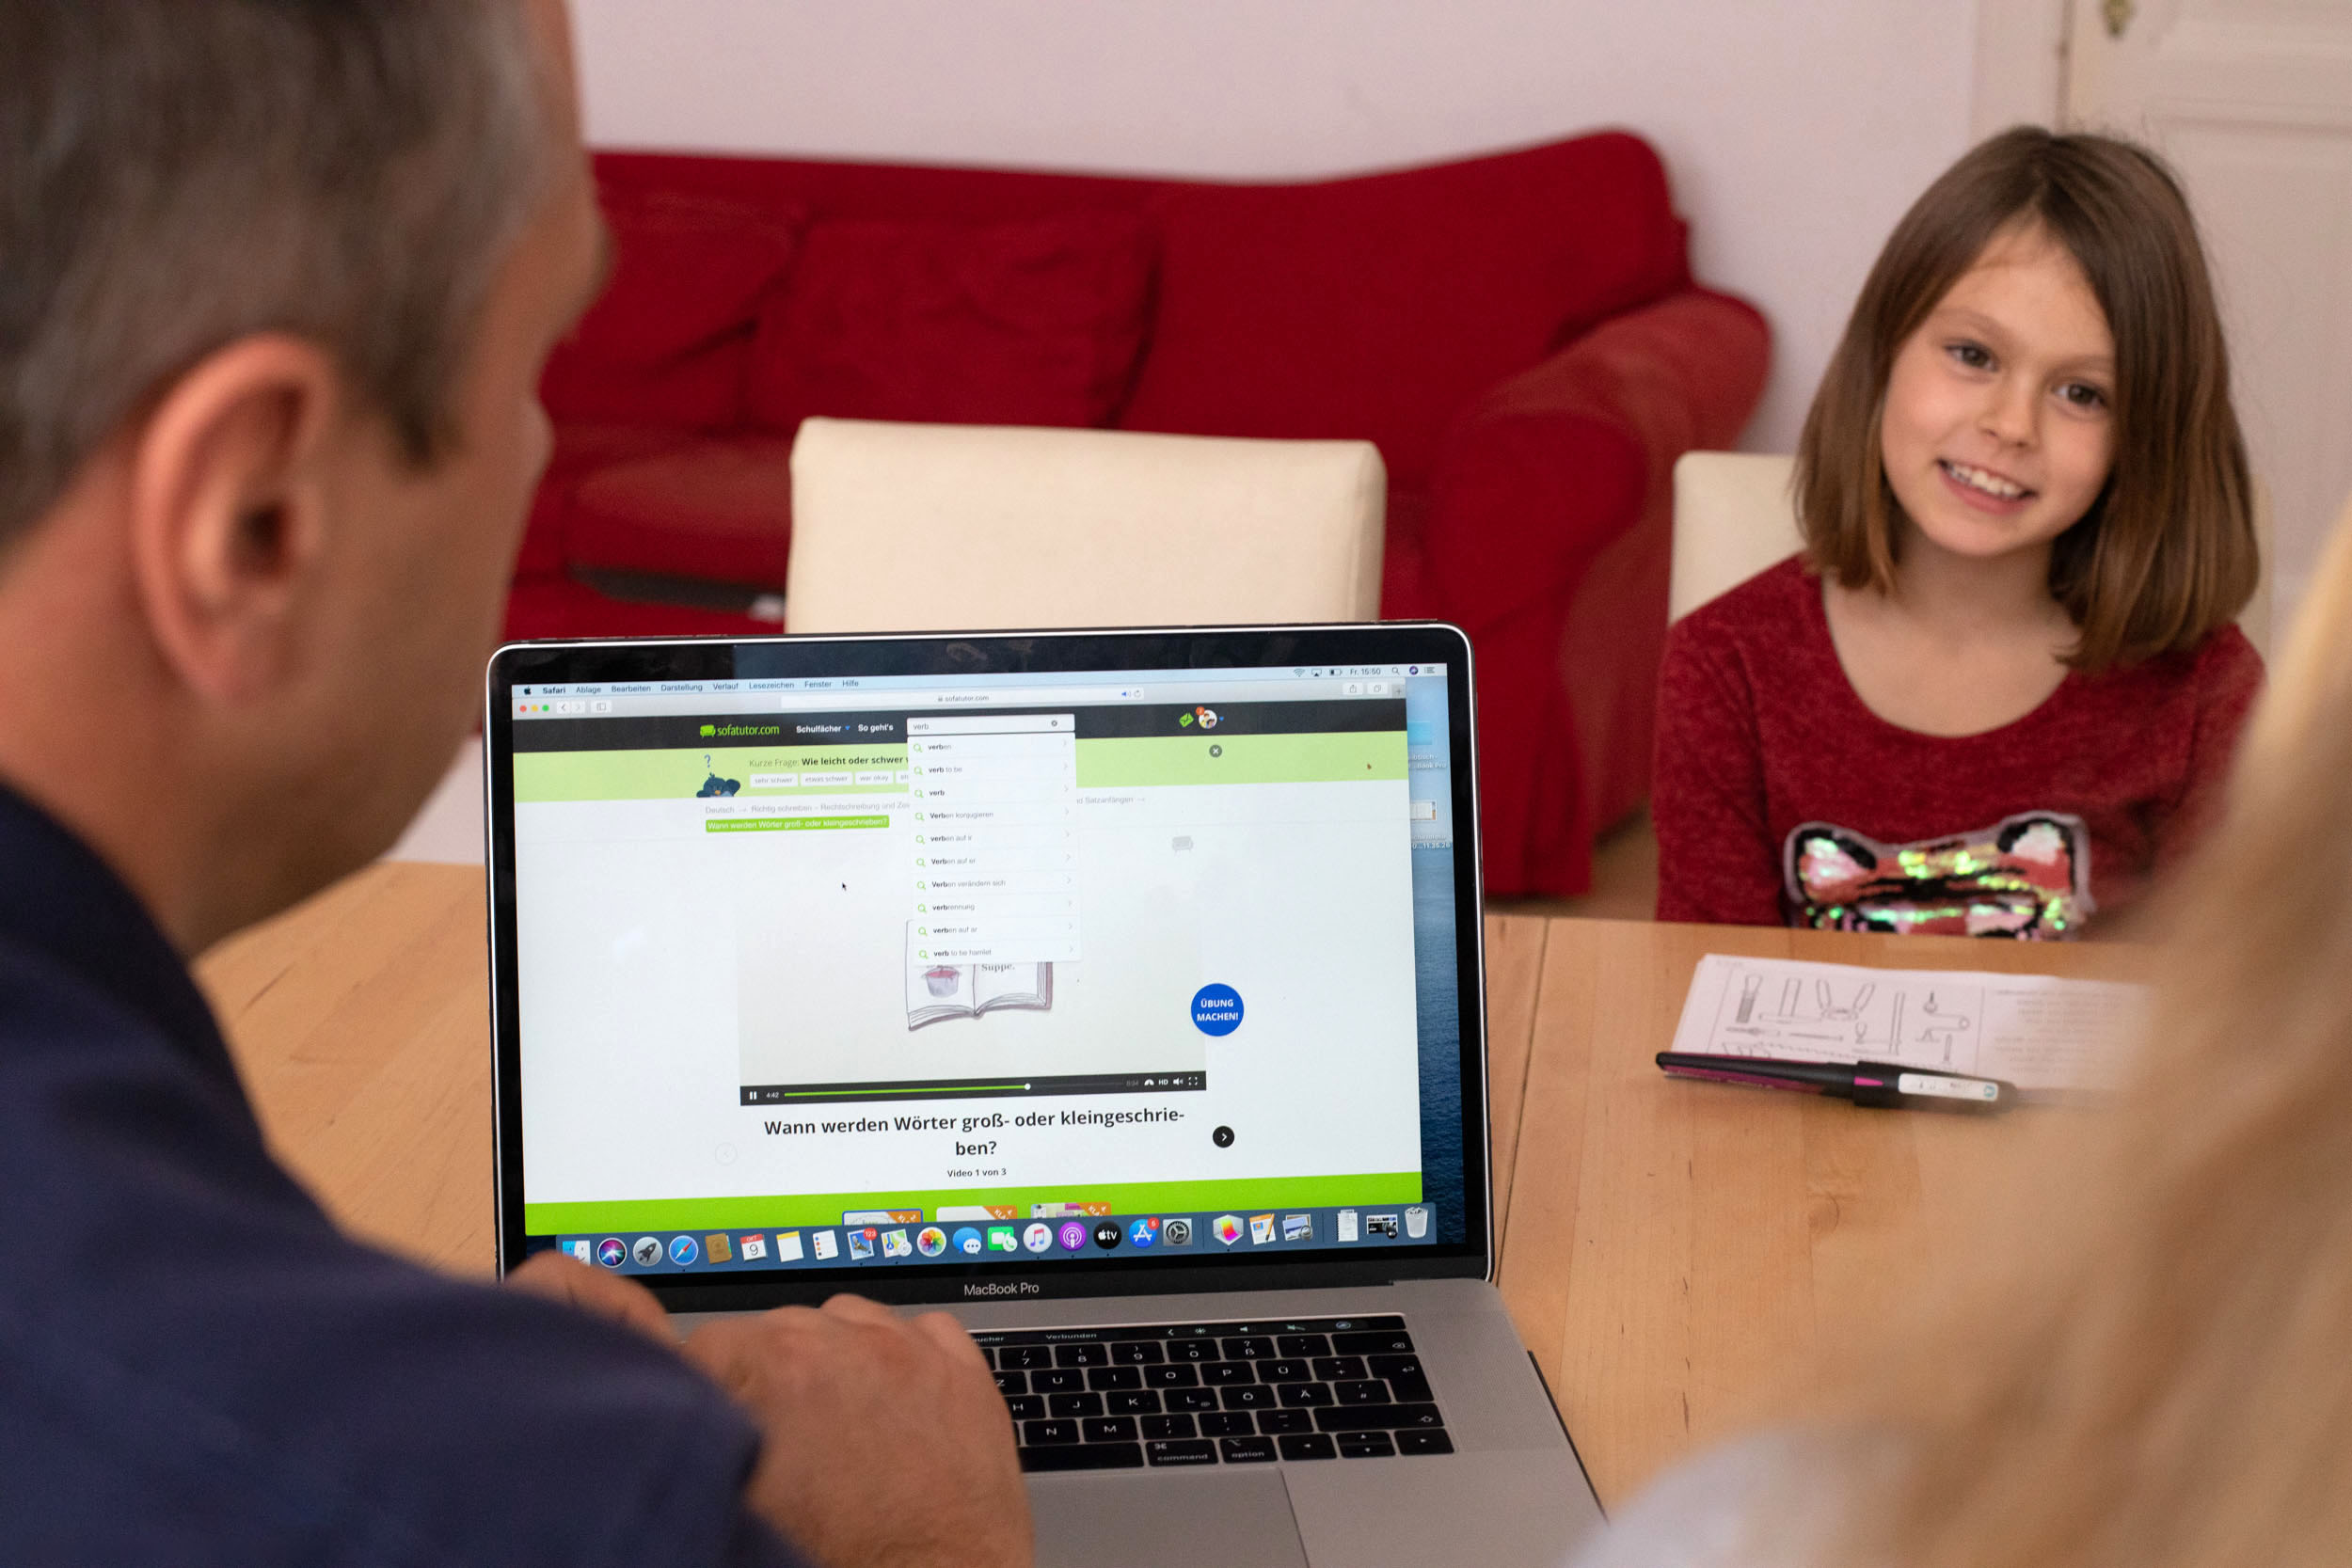 Familie entdeckt die Vorteile digitaler Lernplattformen